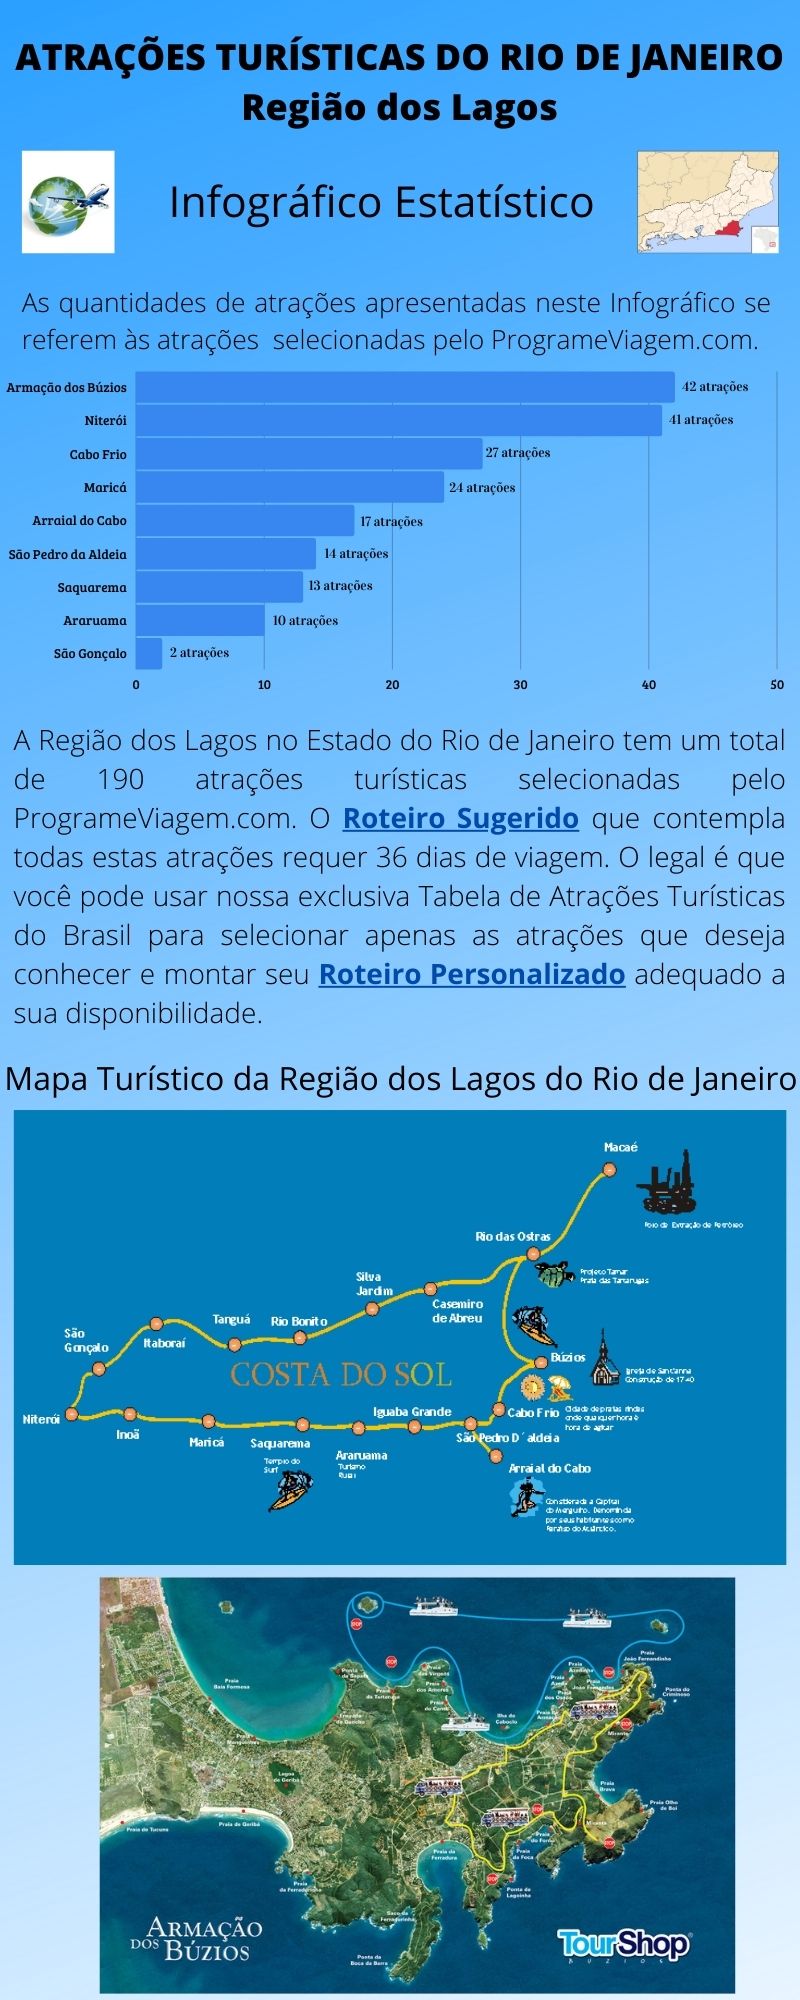 Infográfico Atrações Turísticas do Rio de Janeiro (Região dos Lagos)